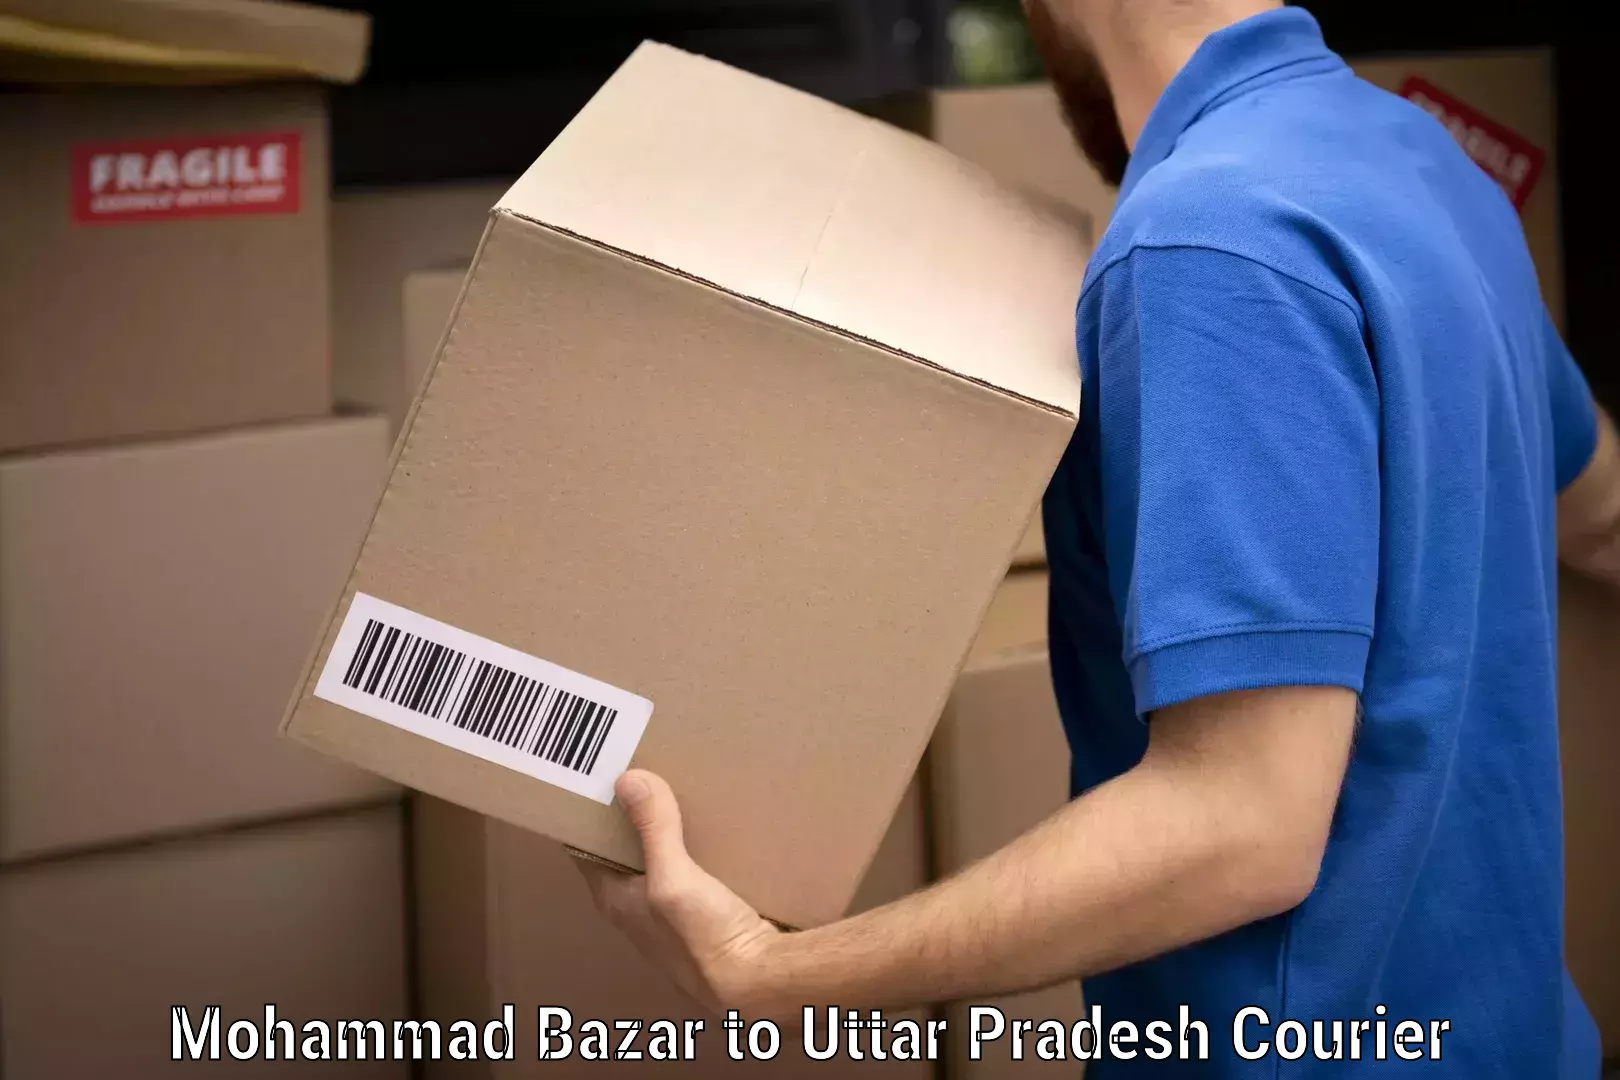 Efficient moving services Mohammad Bazar to Uttar Pradesh